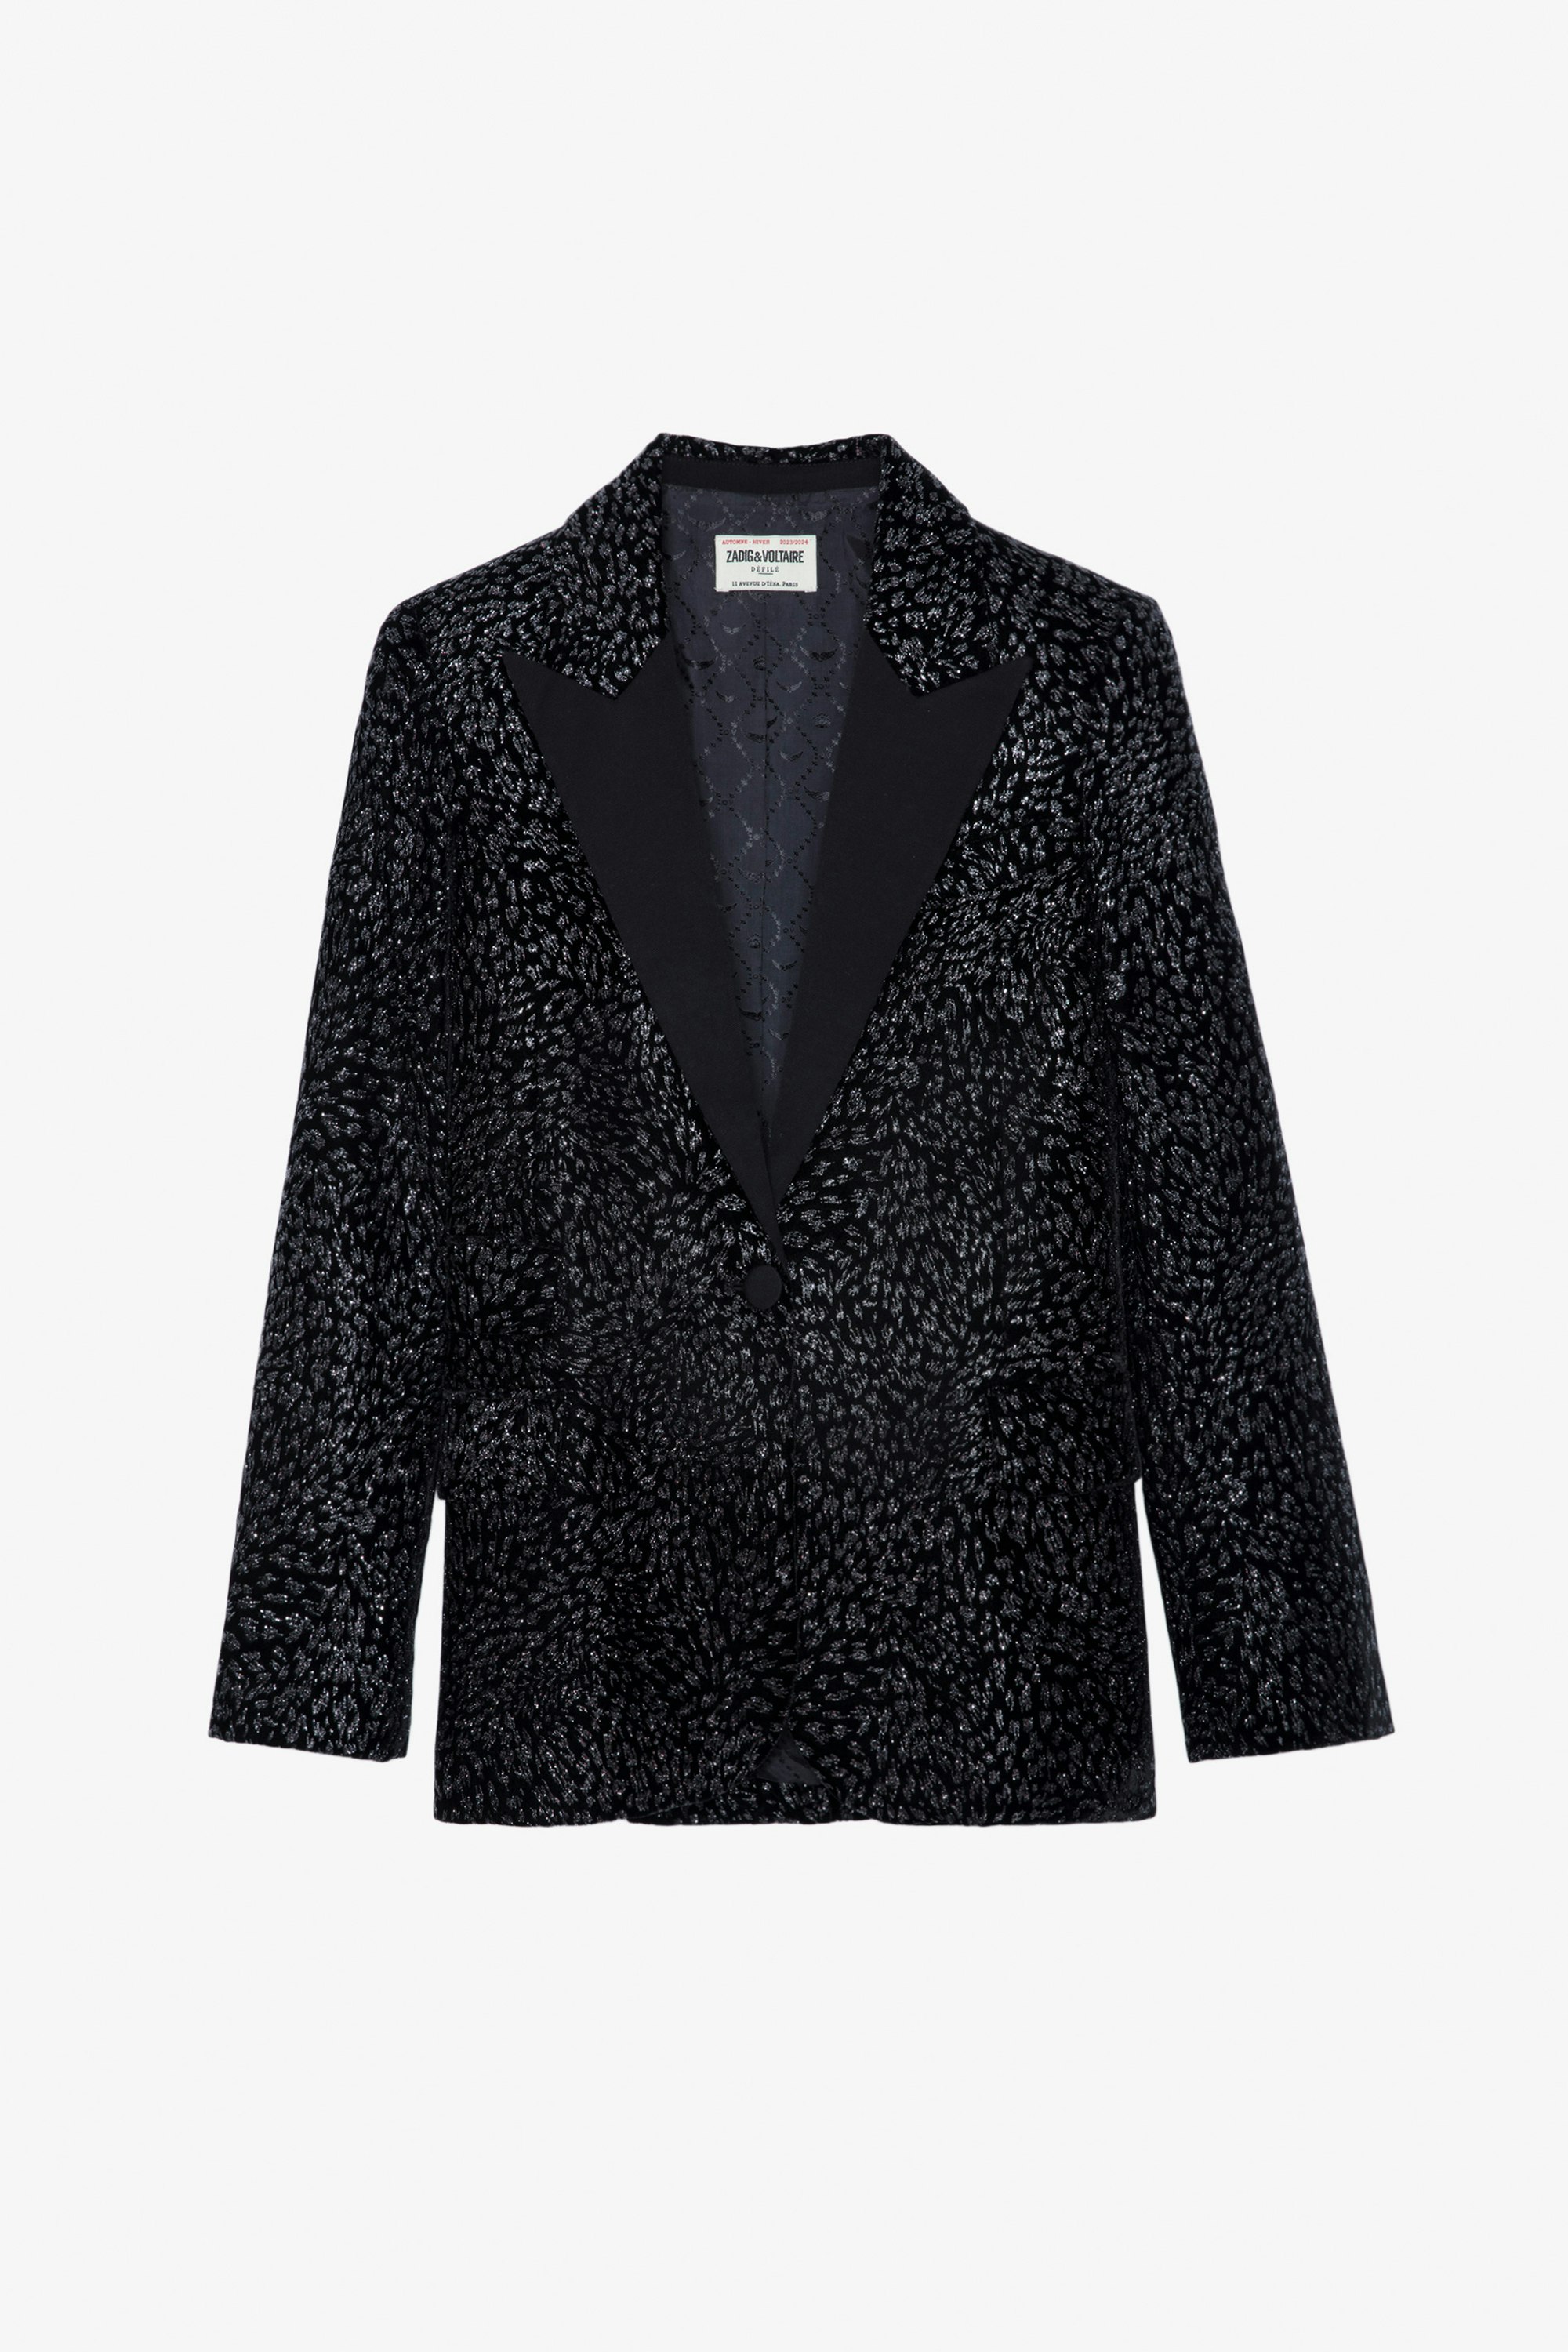 Blazer Venus Velours - Veste de tailleur blazer en velours pailleté noir motifs léopard à fermeture boutonnée.